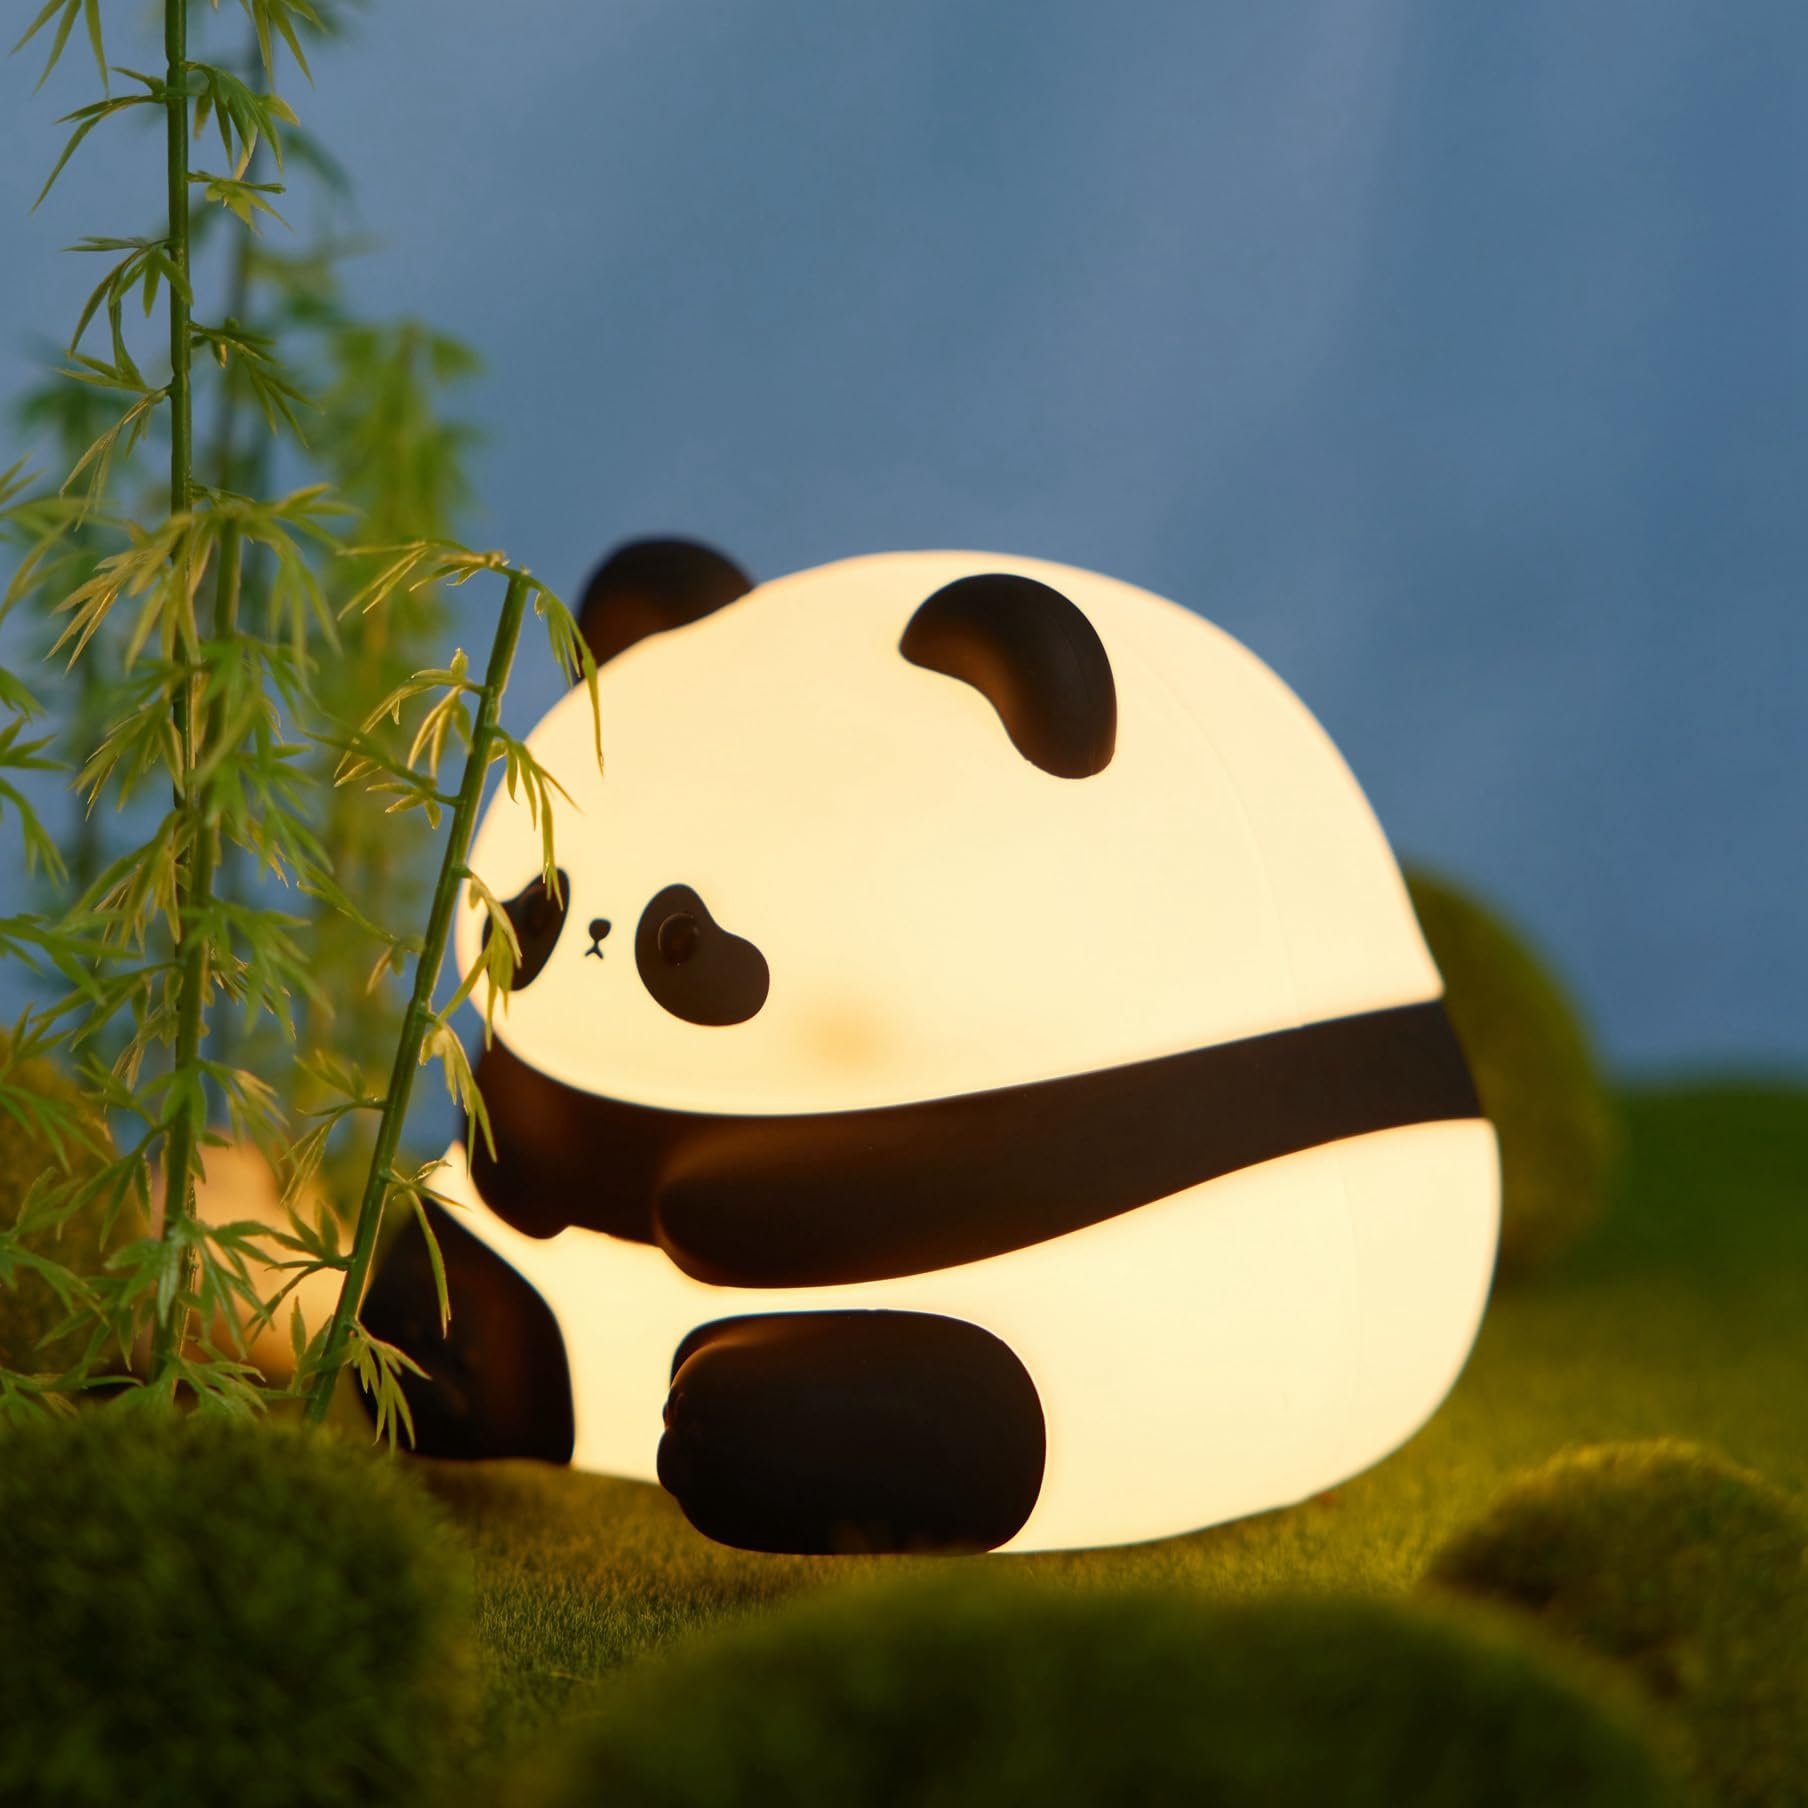 Powerwill LED Nachtlicht LED Baby Silikon Nachtlicht, süße Panda-Nachttischlampe, Silikon Dimmbare Nachtlicht für Kinder, LED fest integriert, Touch&Switch-Steuerung, Nachtlampe USB Aufladbare, für Baby,Kinderzimmer,Camping,Geschenk